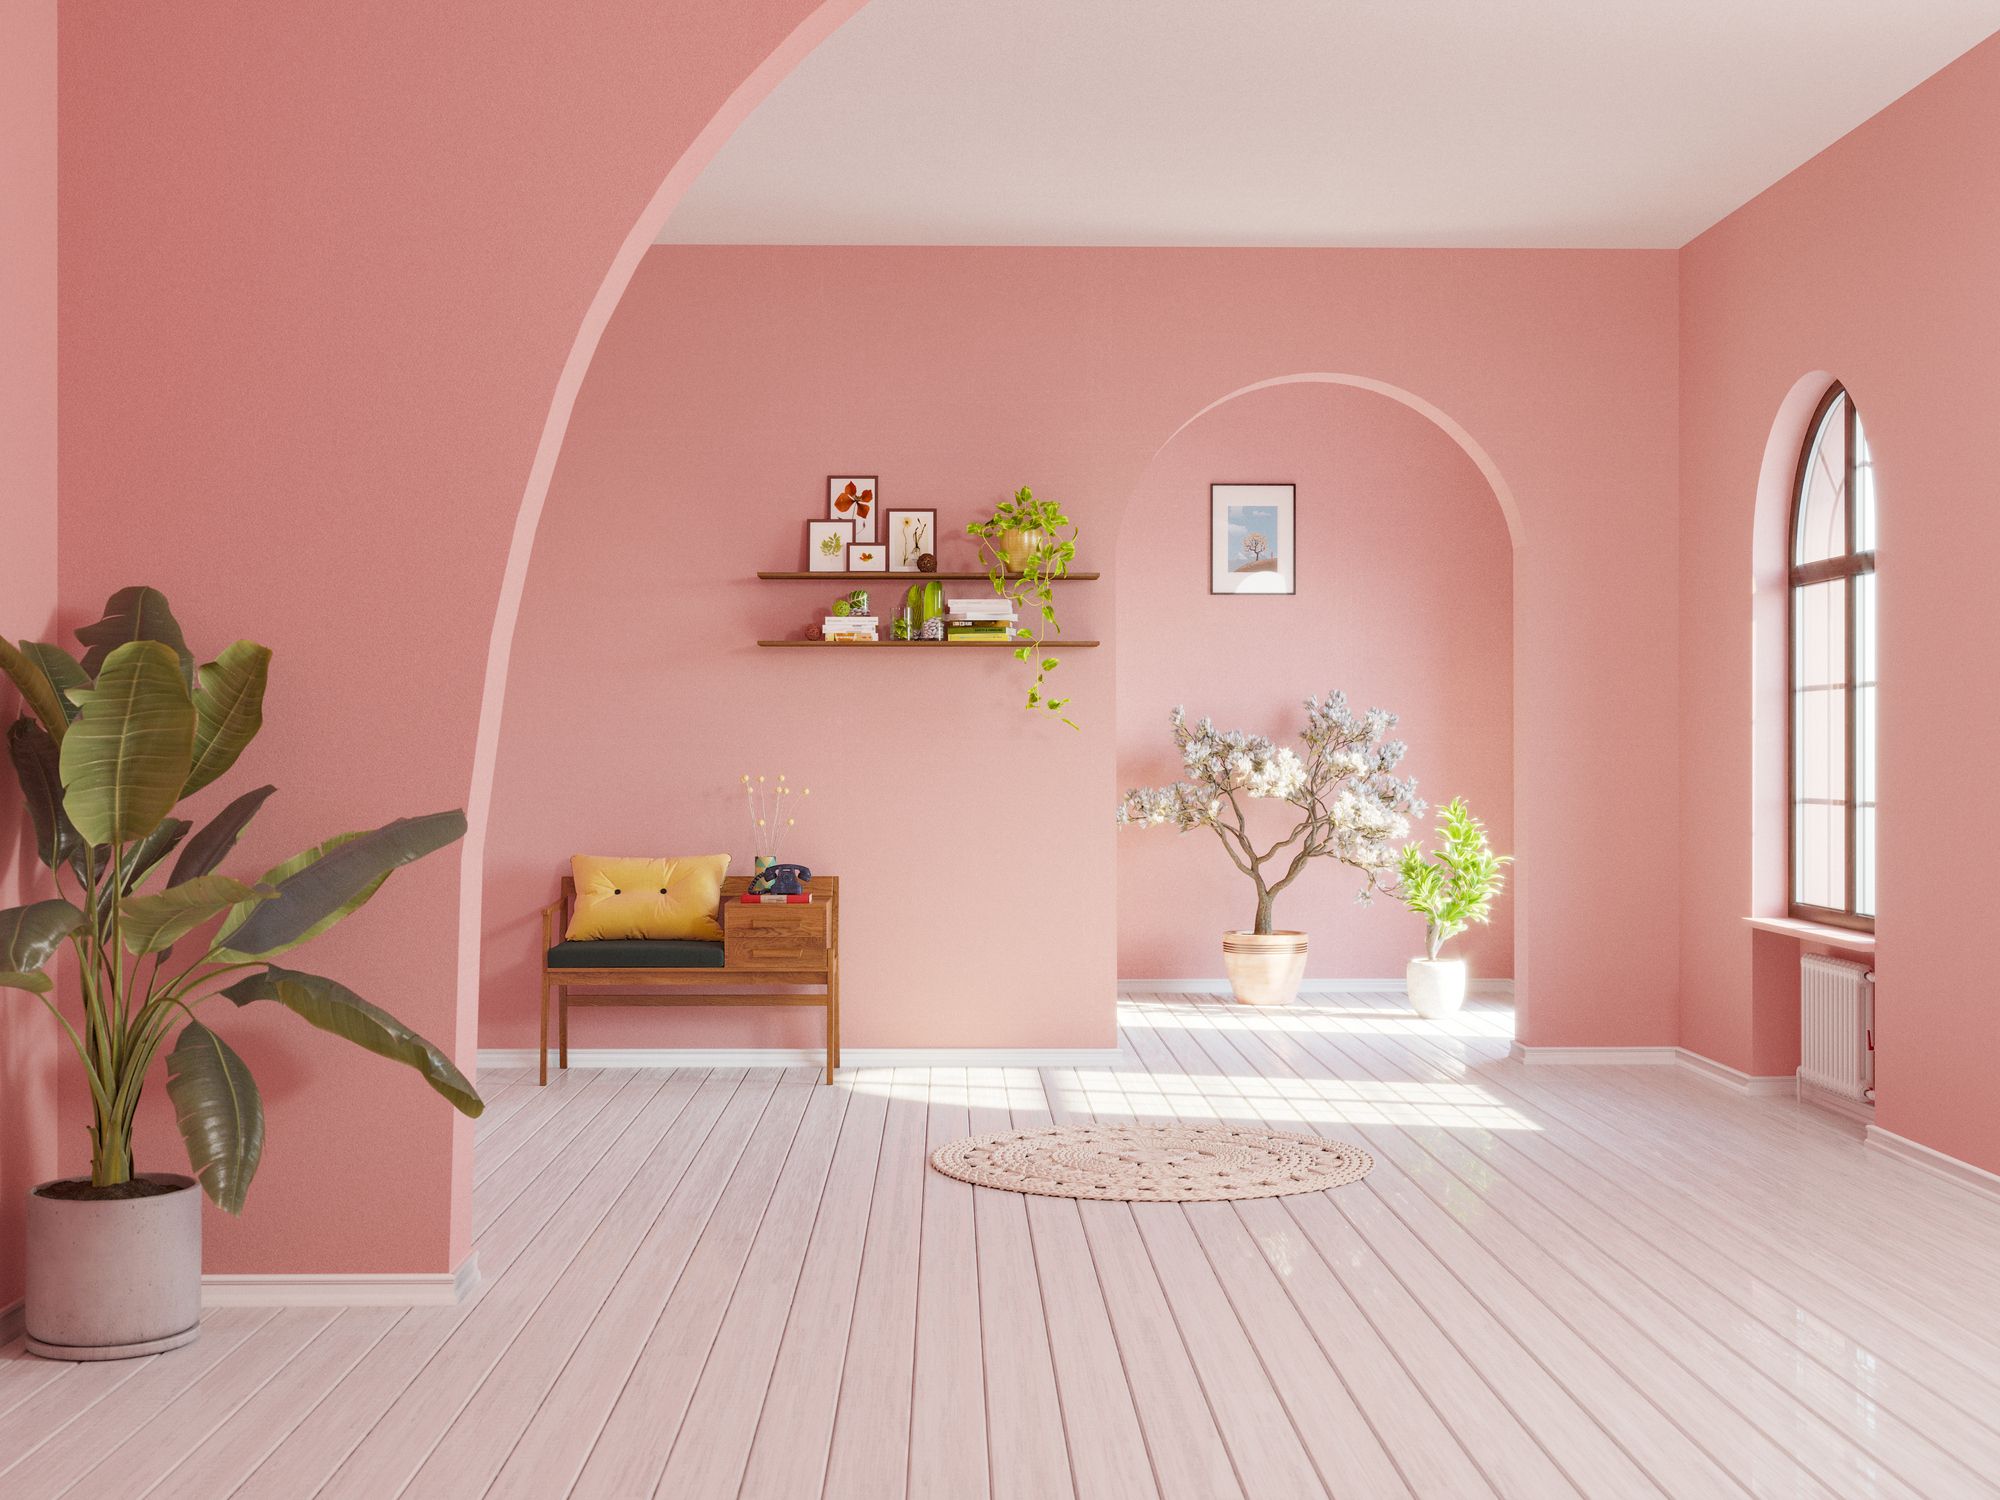 Maravilloso silueta Chorrito 30 Colores con los que pintar las paredes de tu casa